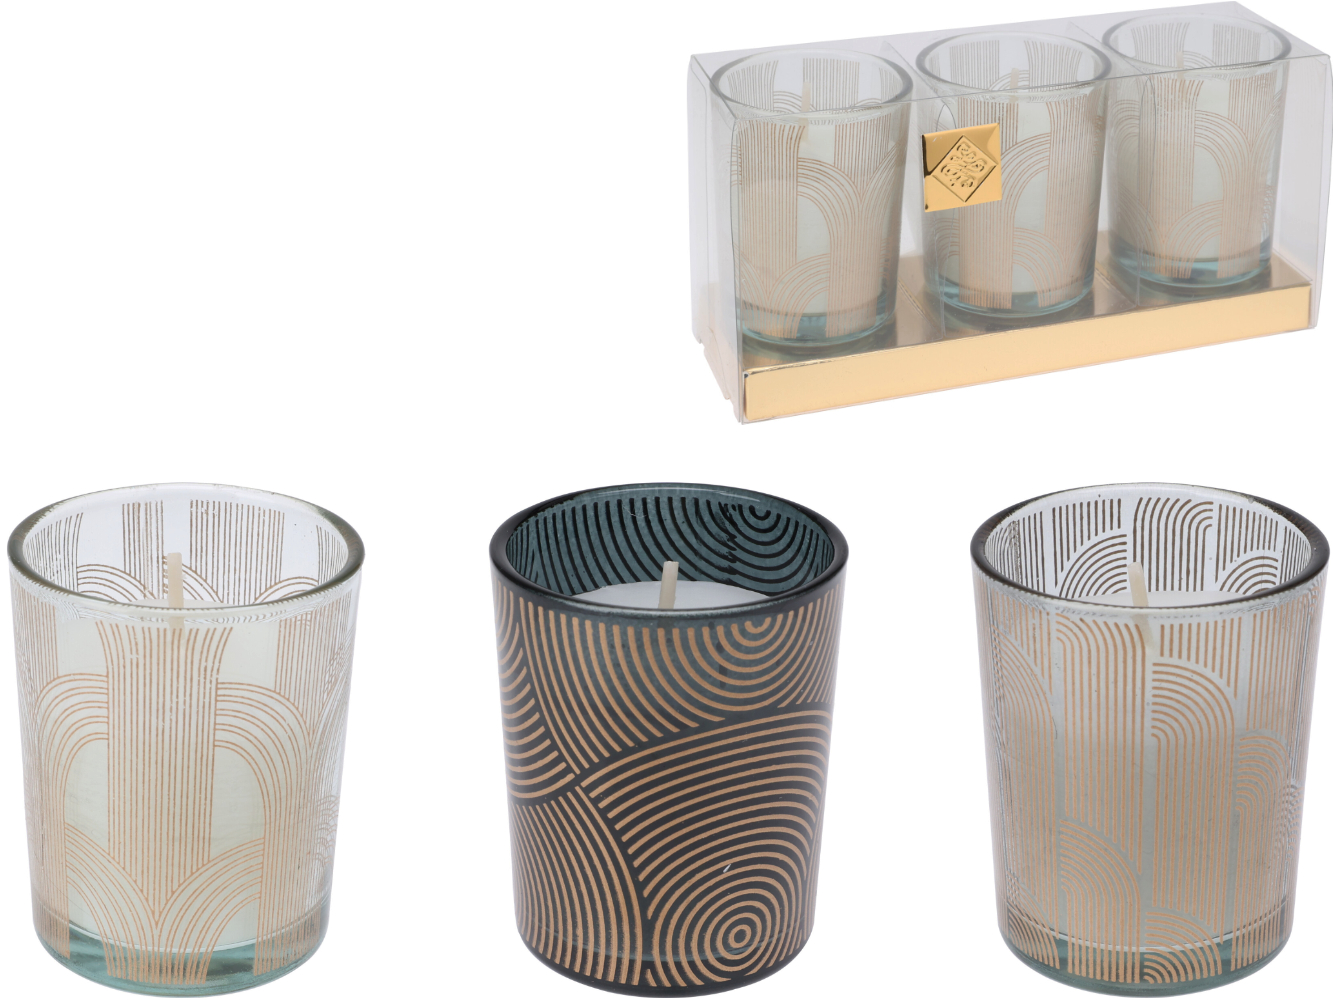 Duftkerze, Aromakerze 3er Set im Glas, in exklusiver dekorativer Verpackung